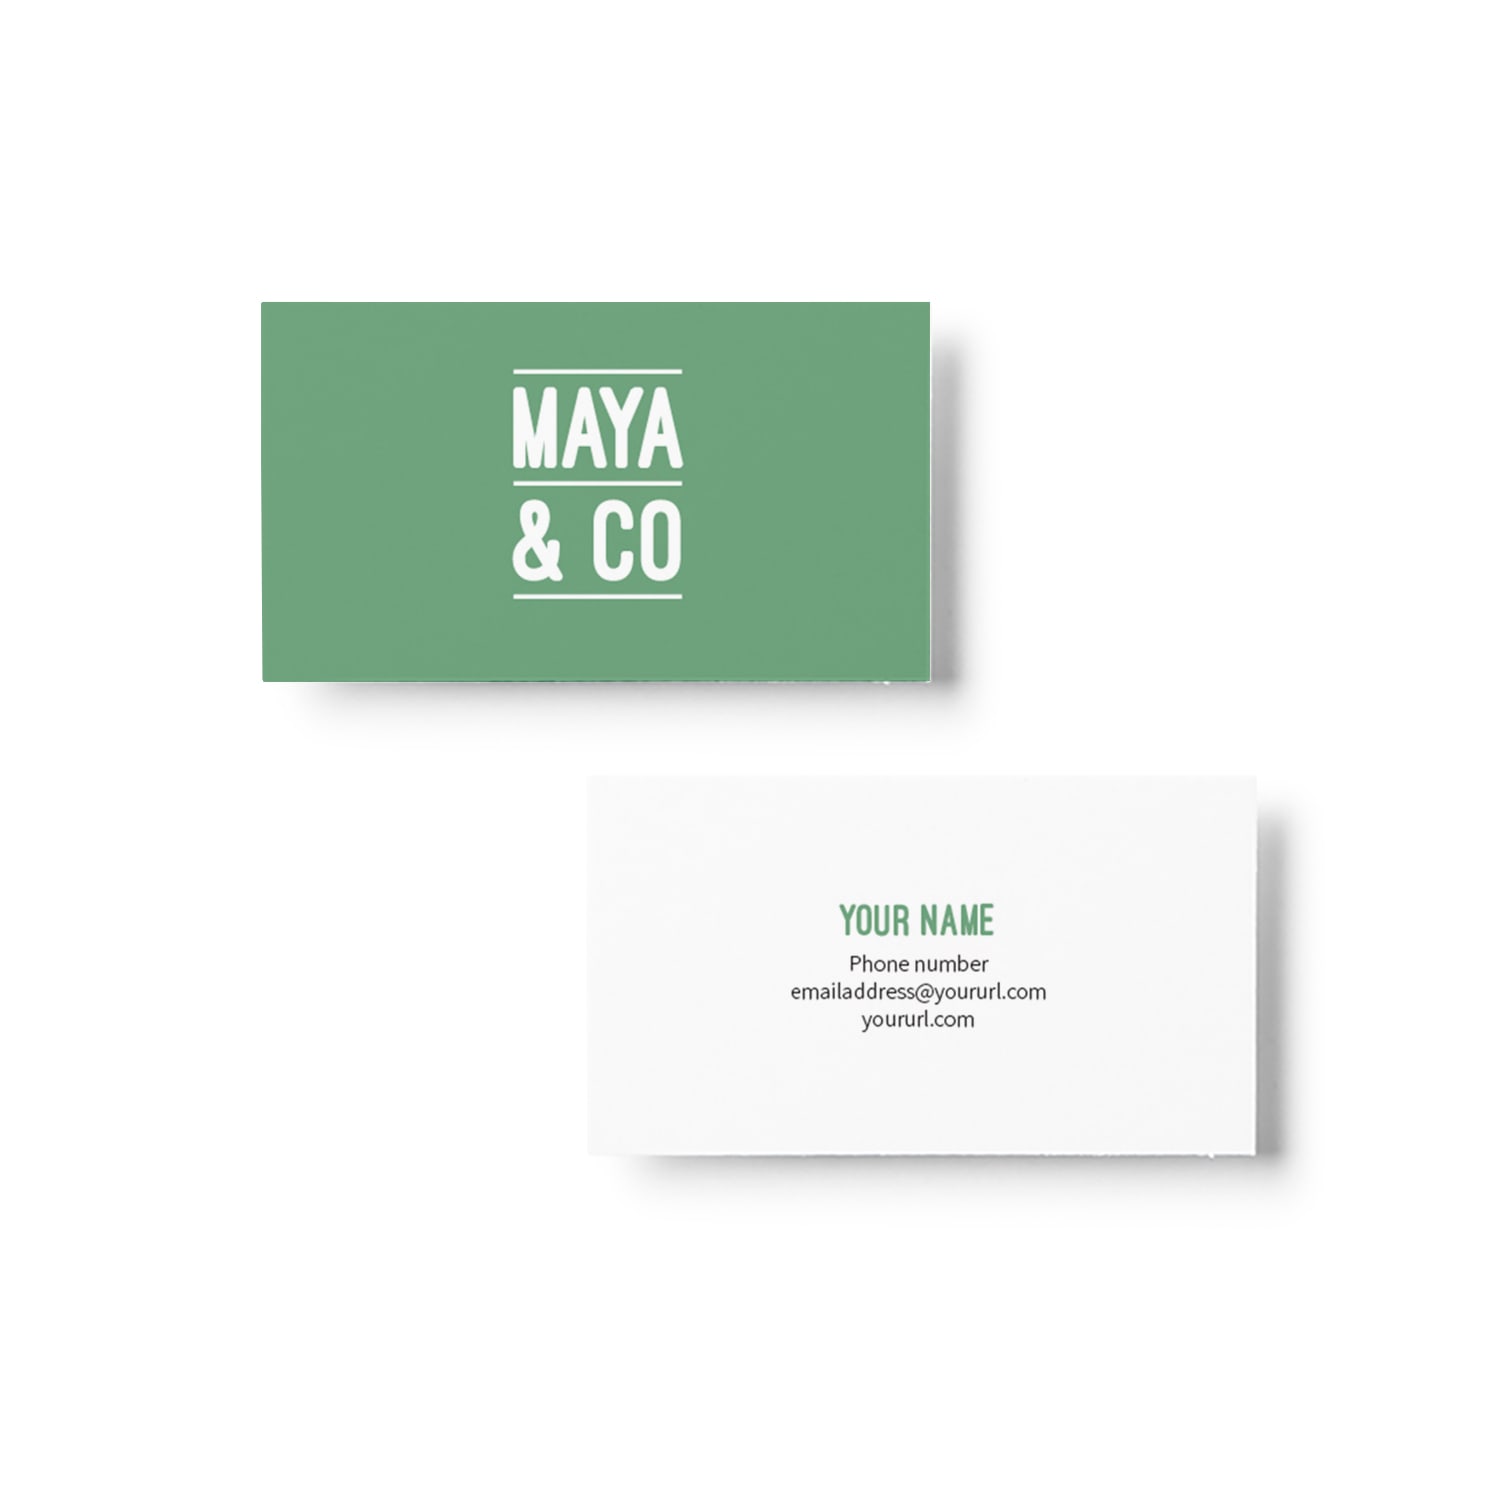 Maya & Co Business Card Design_Copyright Tiny Crowd